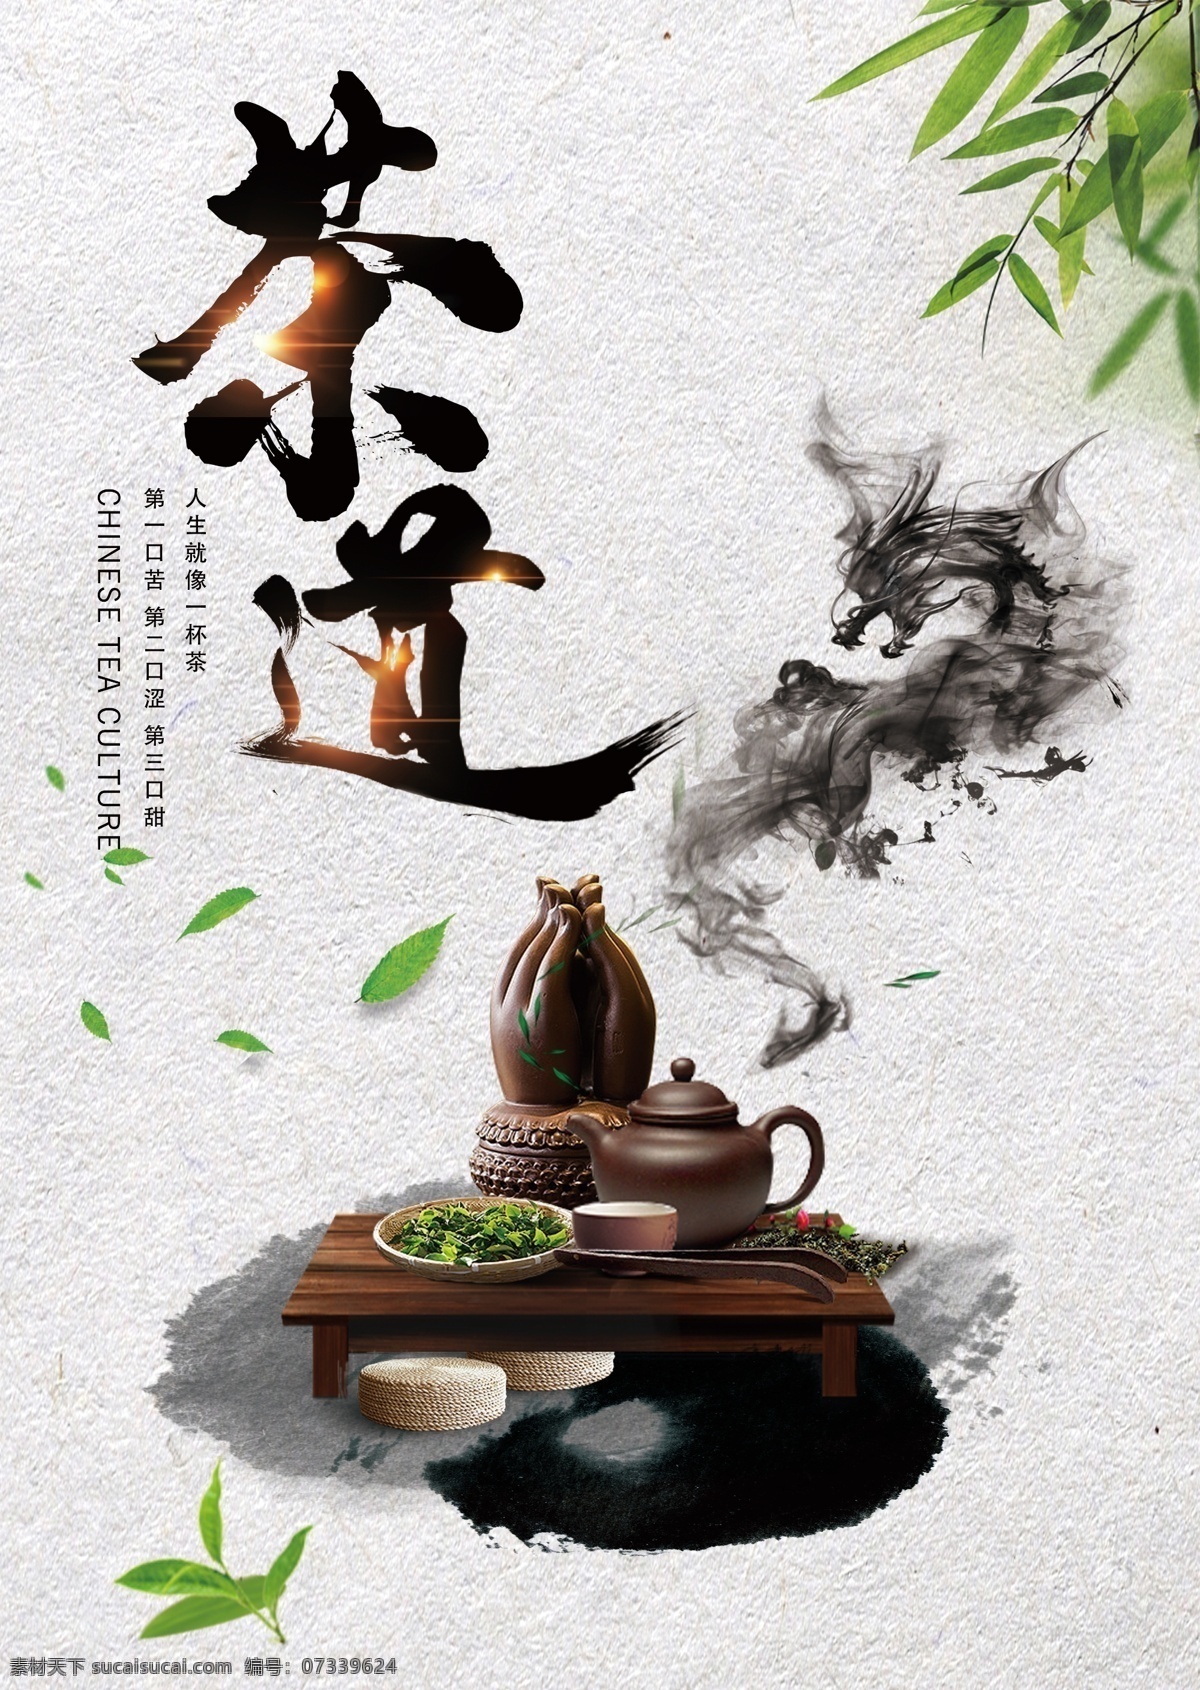 茶文化 宣传 艺术 风格 海报 茶 专辑海报 分层